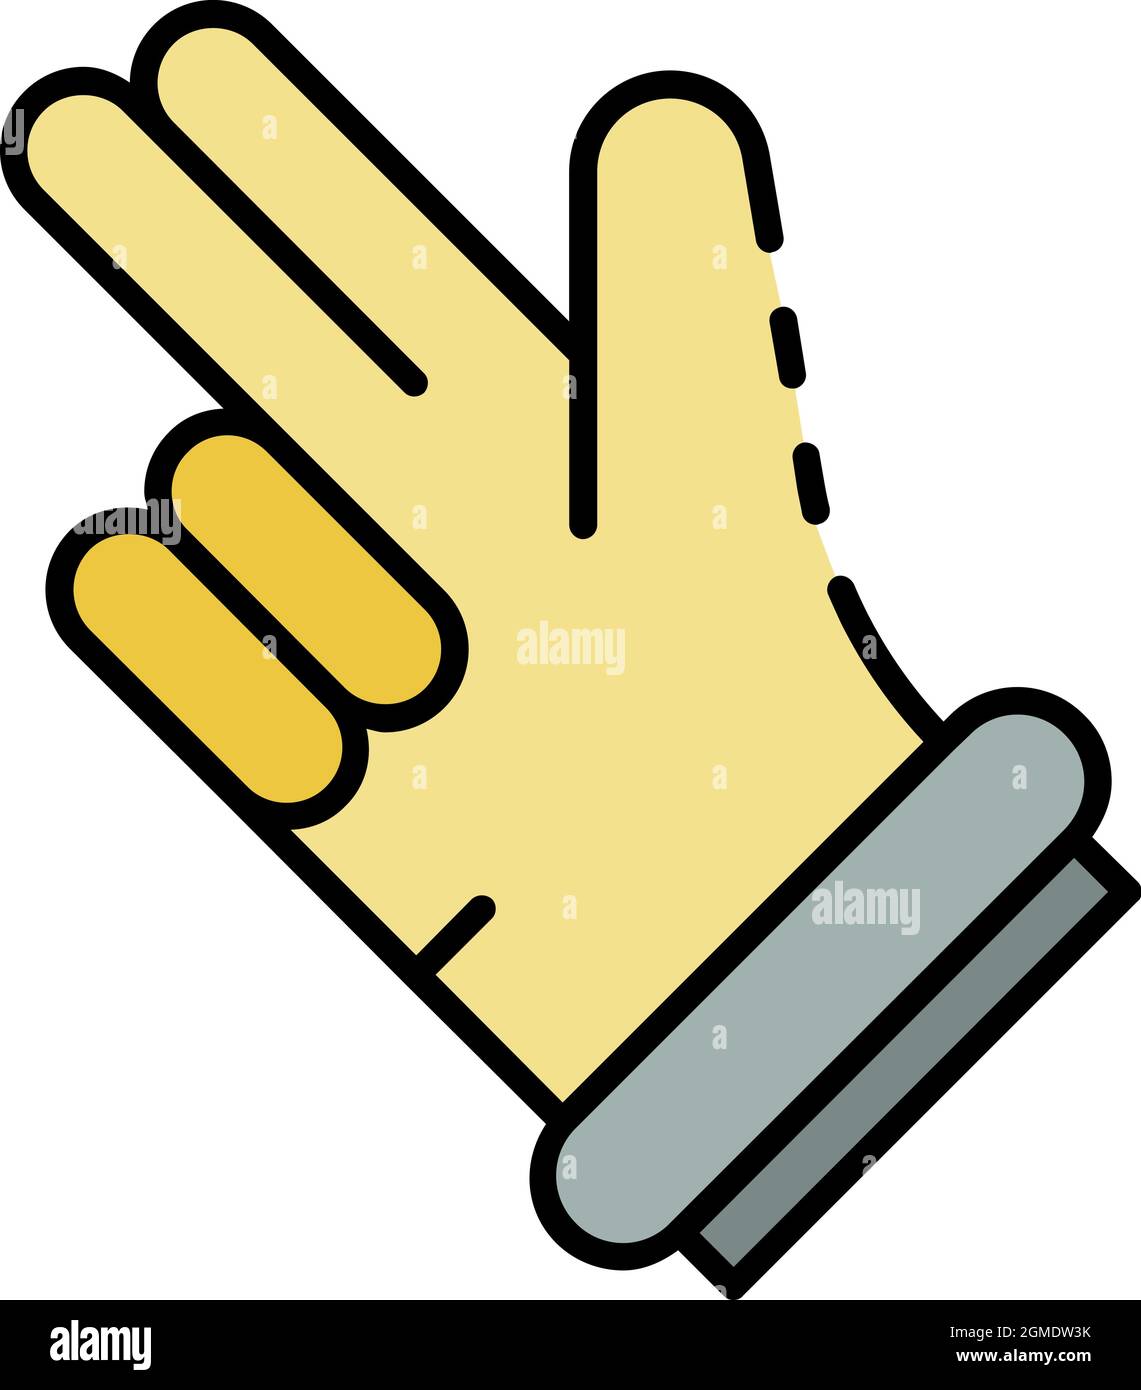 Vektor symbolische gekreuzte finger männliche palme hand ok geste konzept  zeichen illustration licht symbol poster design auf blauem hintergrund  isoliert